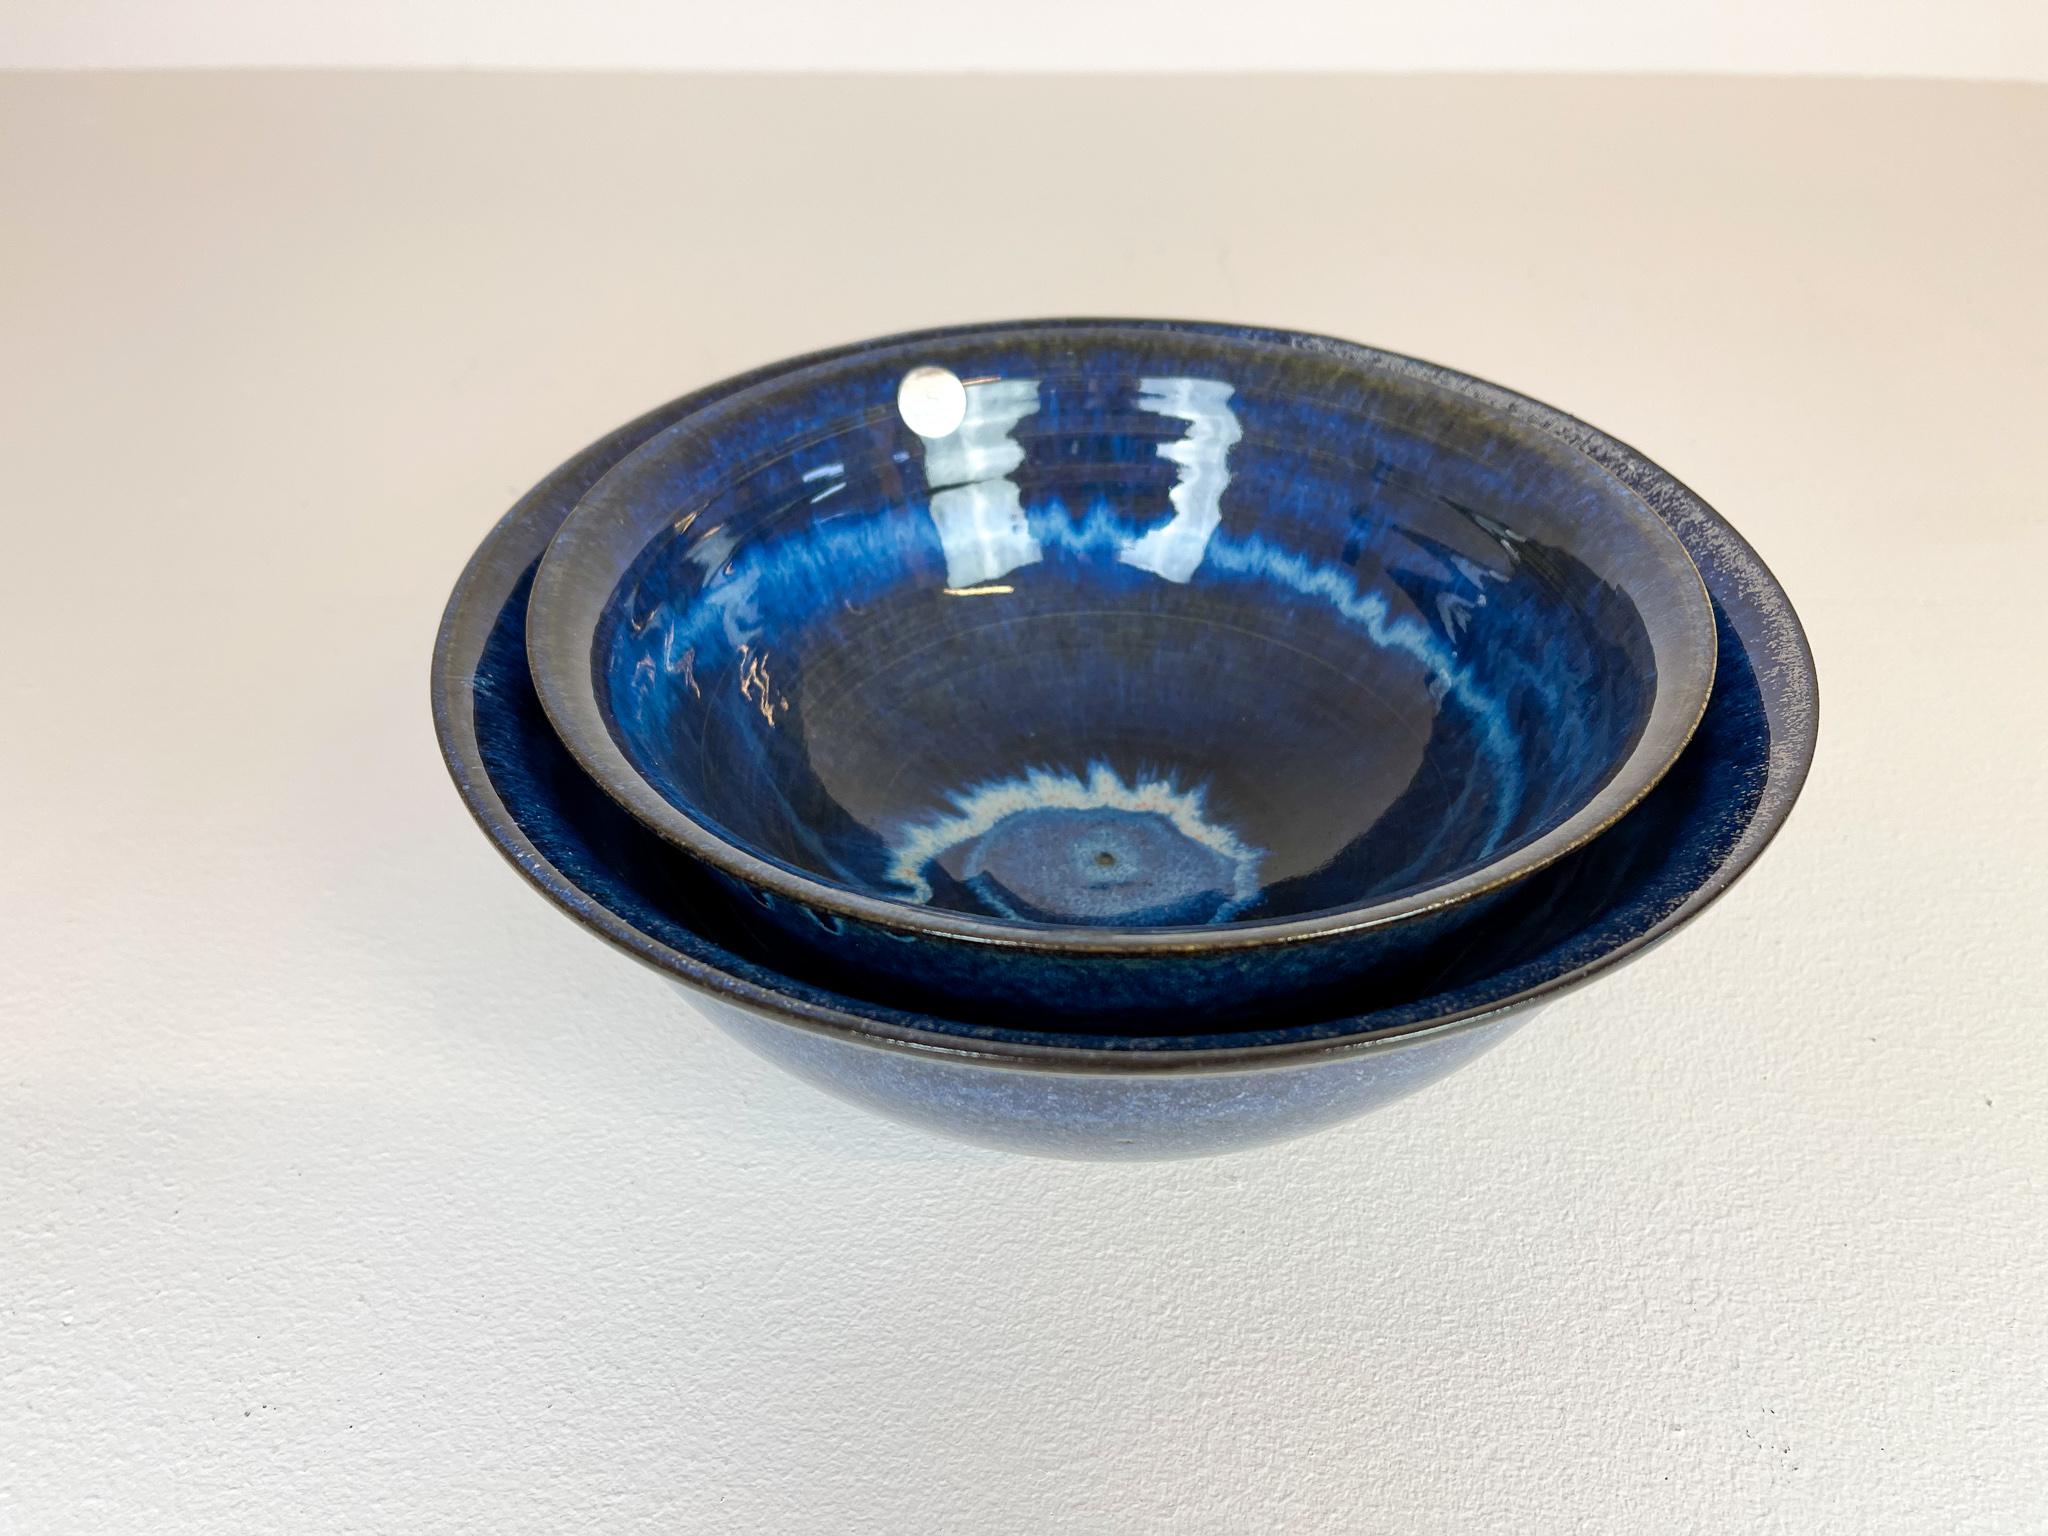 Scandinavian Modern Ceramic Bowls by Carl-Harry Stålhane Design Huset, Sweden For Sale 1